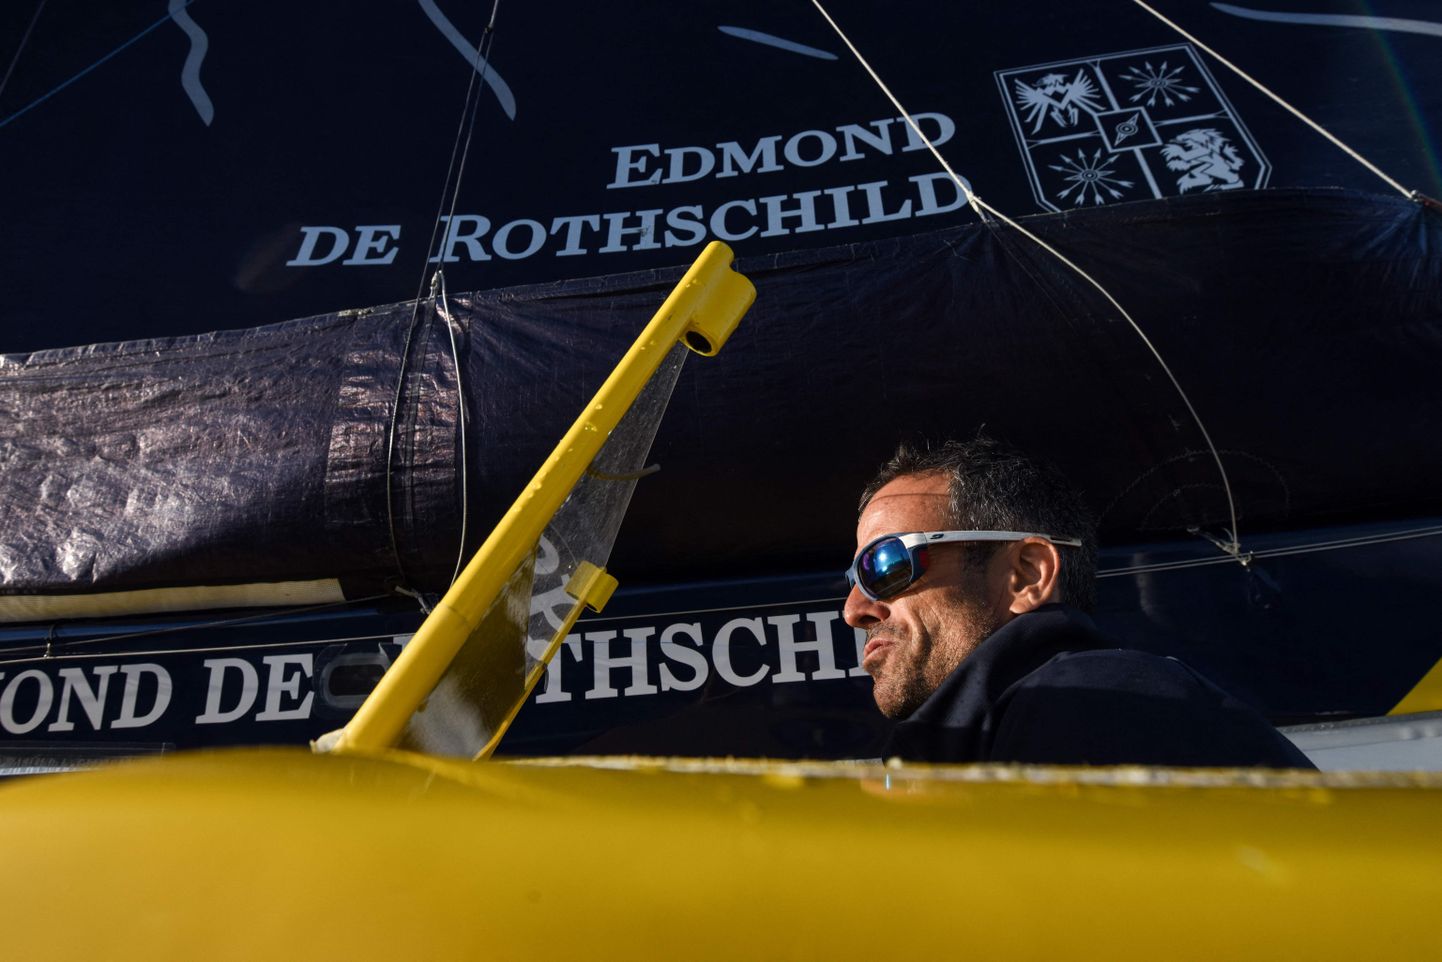 Edmond de Rothschild Group hoiatab Ameerikat mõõna eest ja juhendab Euroopat võtma kurssi intressimäärade kergitamisele üle veepinna. Pildil prantslasest kipper Franck Cammas katamaraan Gitana tüüri juures 27. oktoobril 2021.